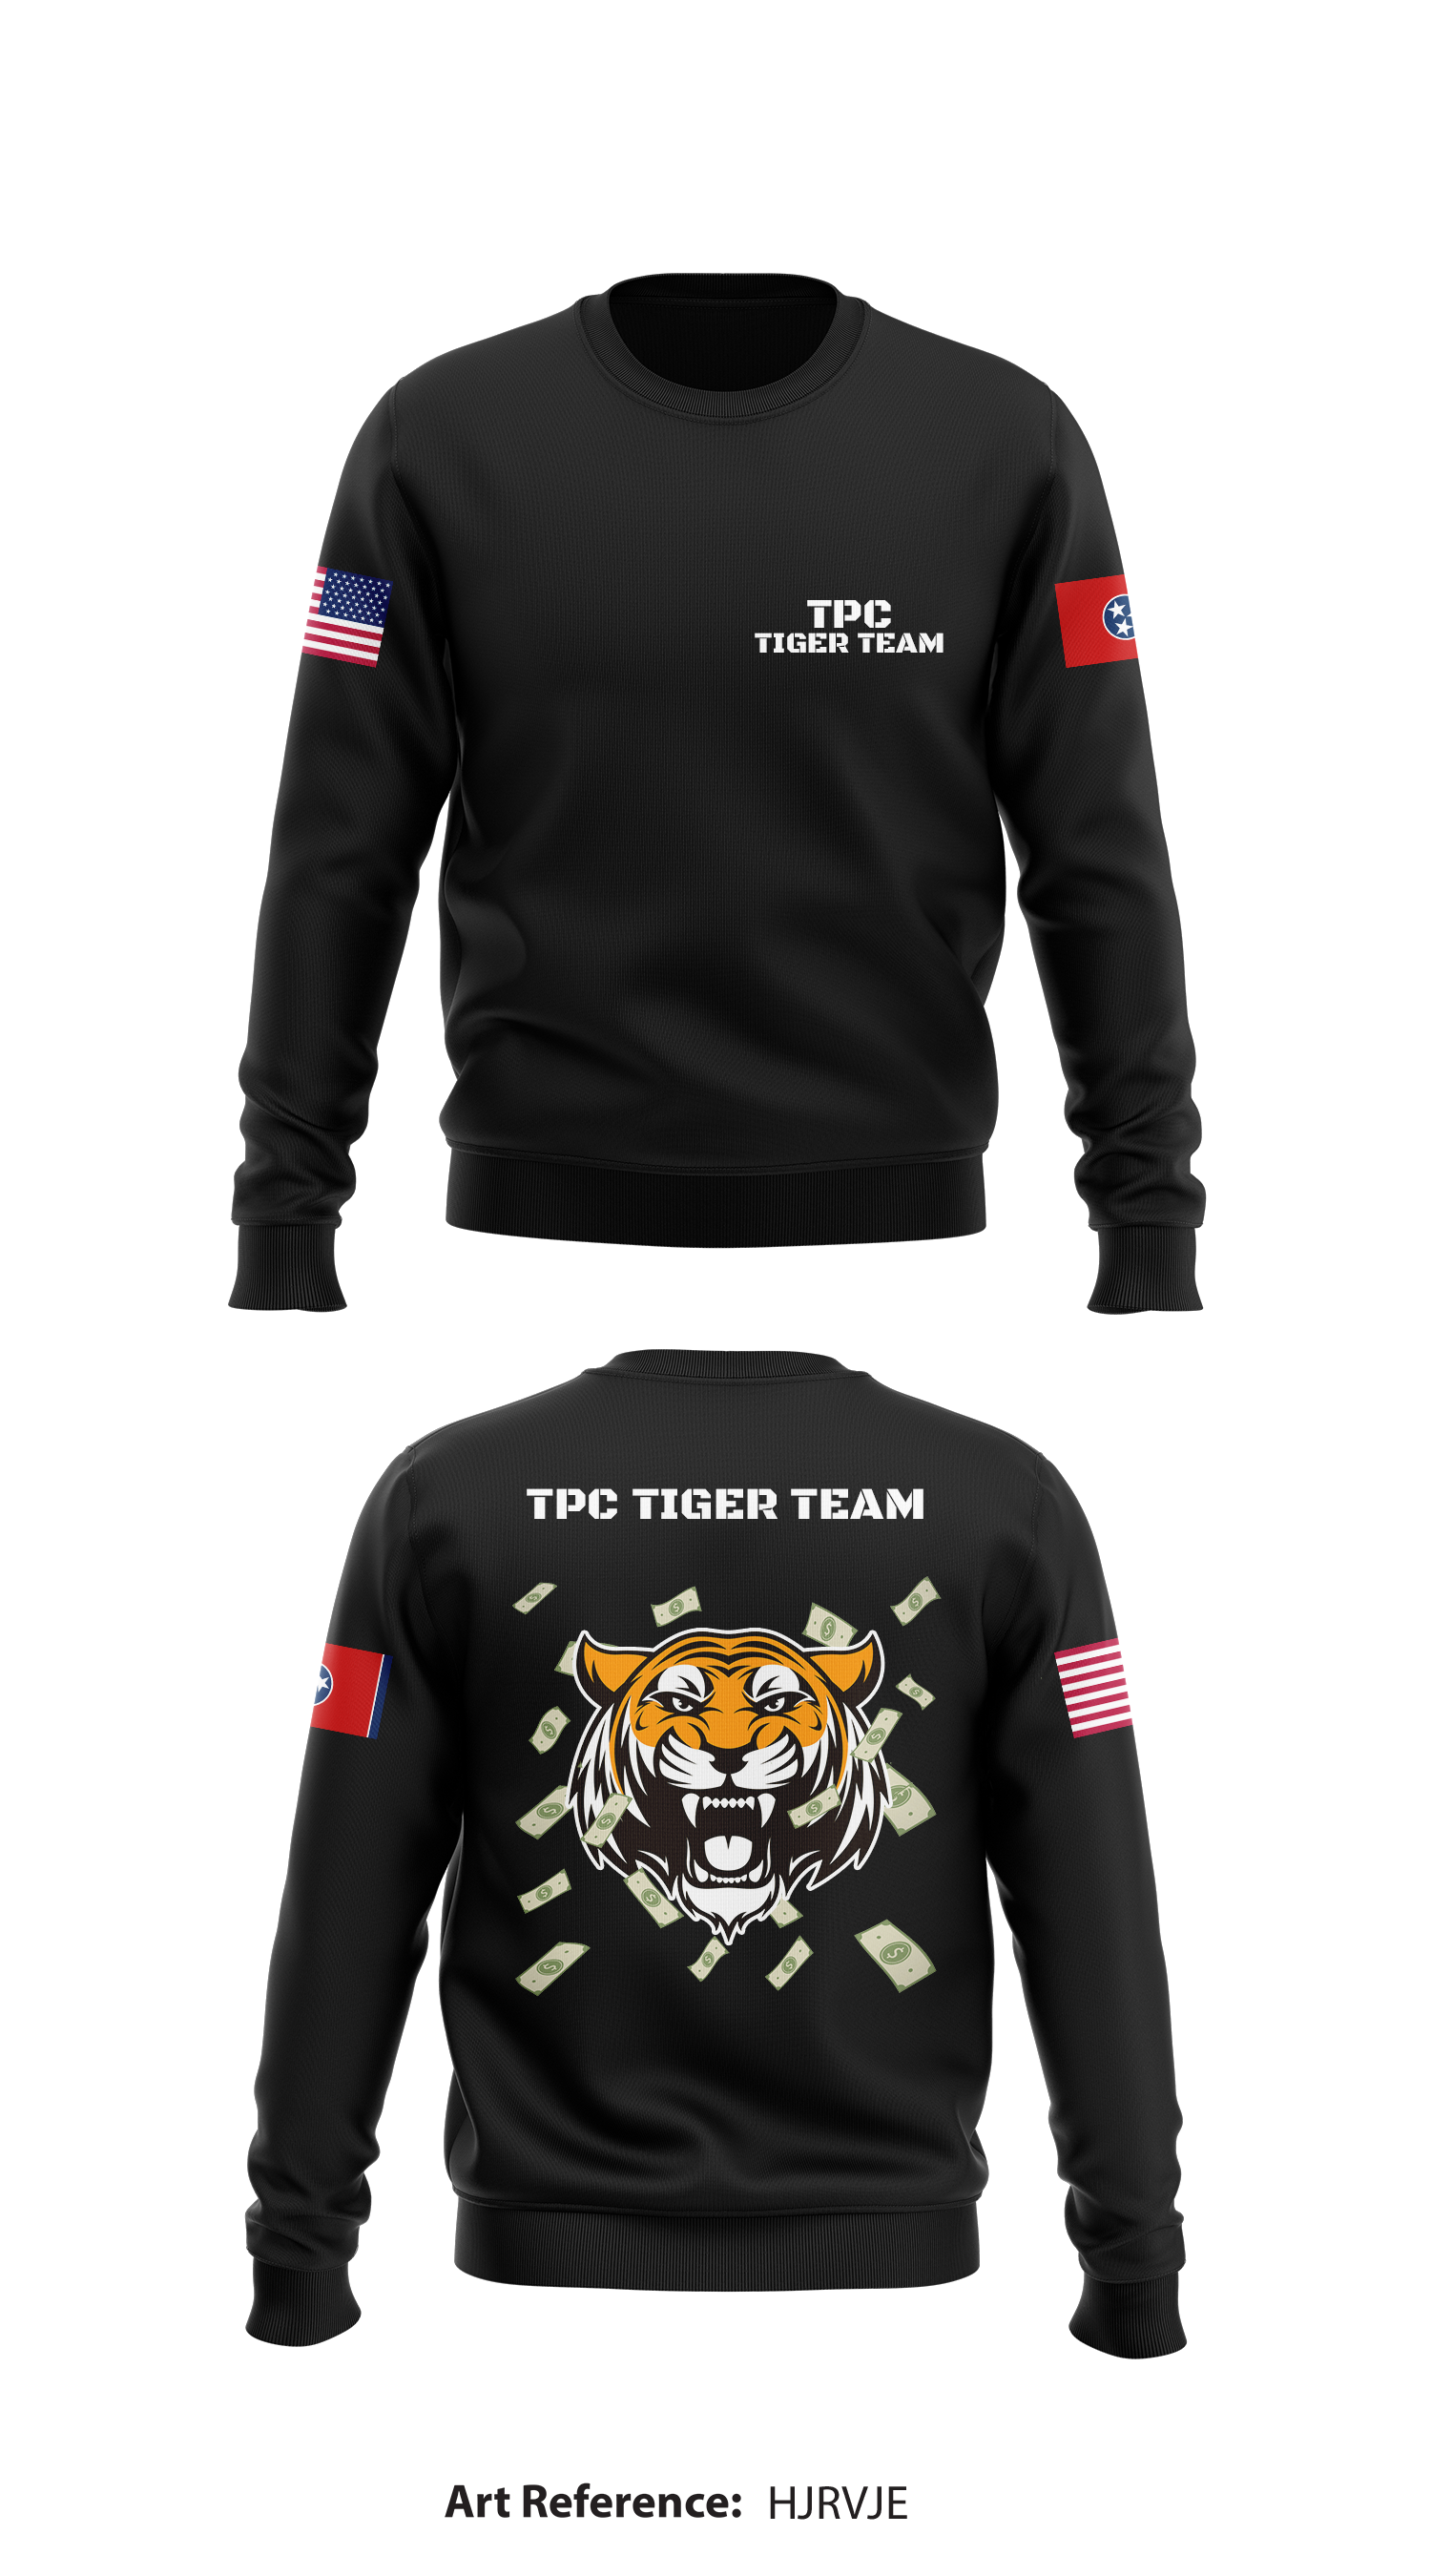 The Tiger Men's Sweatshirt